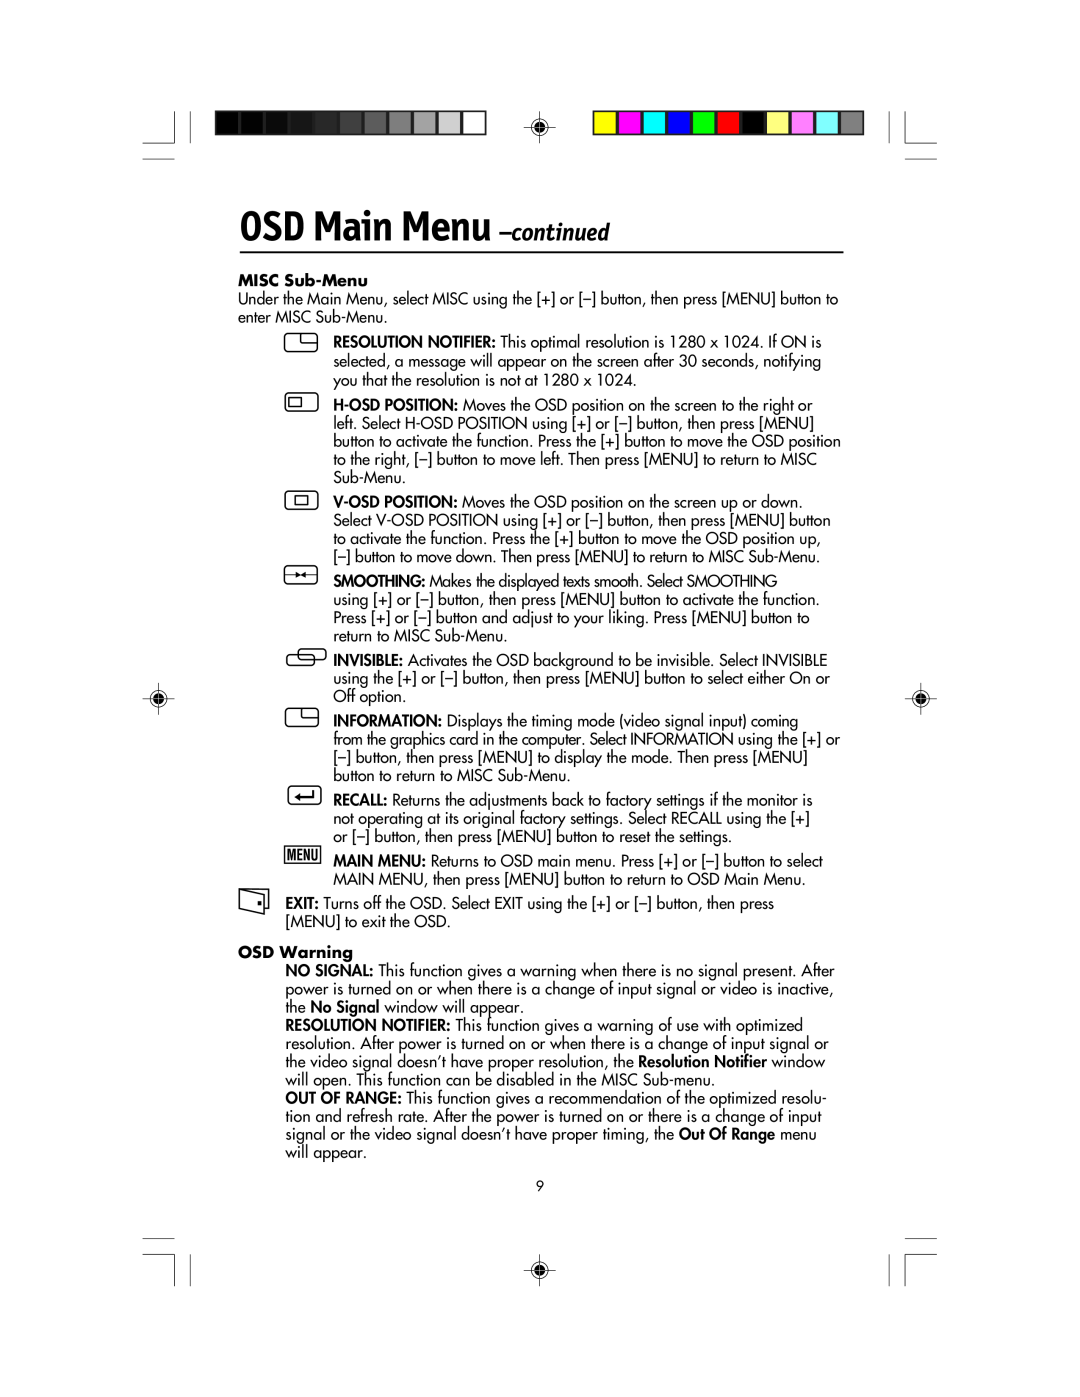 NEC LCD1920NX manual OSD Main Menu -continued, MISC Sub-Menu, OSD Warning 